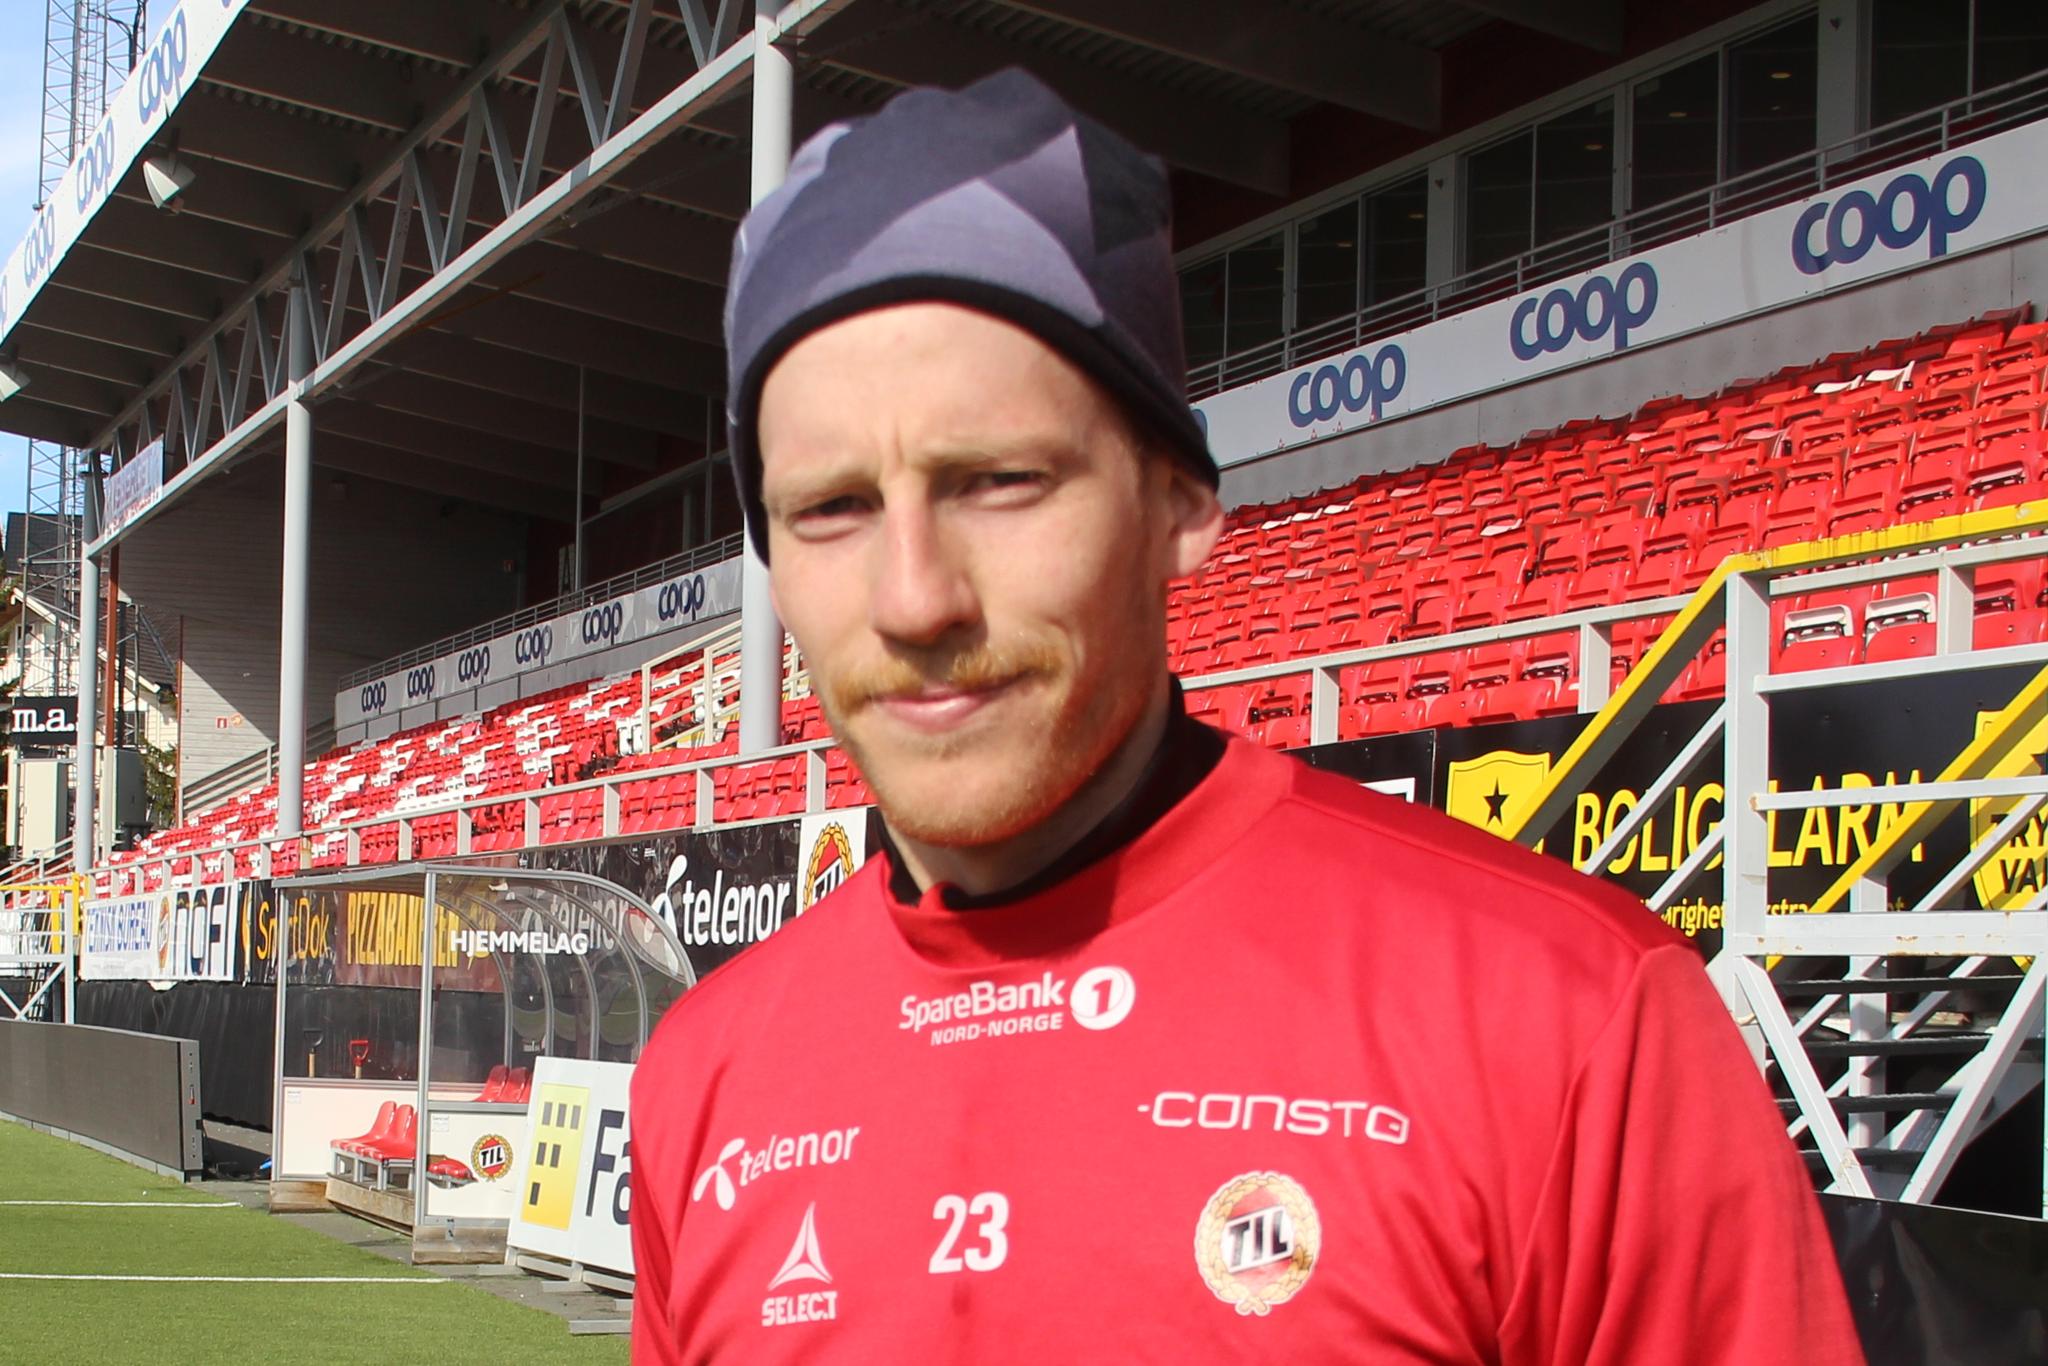 TRØNDER: Gjermund Åsen har begynt å anlegge trønderbart før returen til Trondheim, der han har tenkt å plukke med seg poeng hjem til Tromsø.